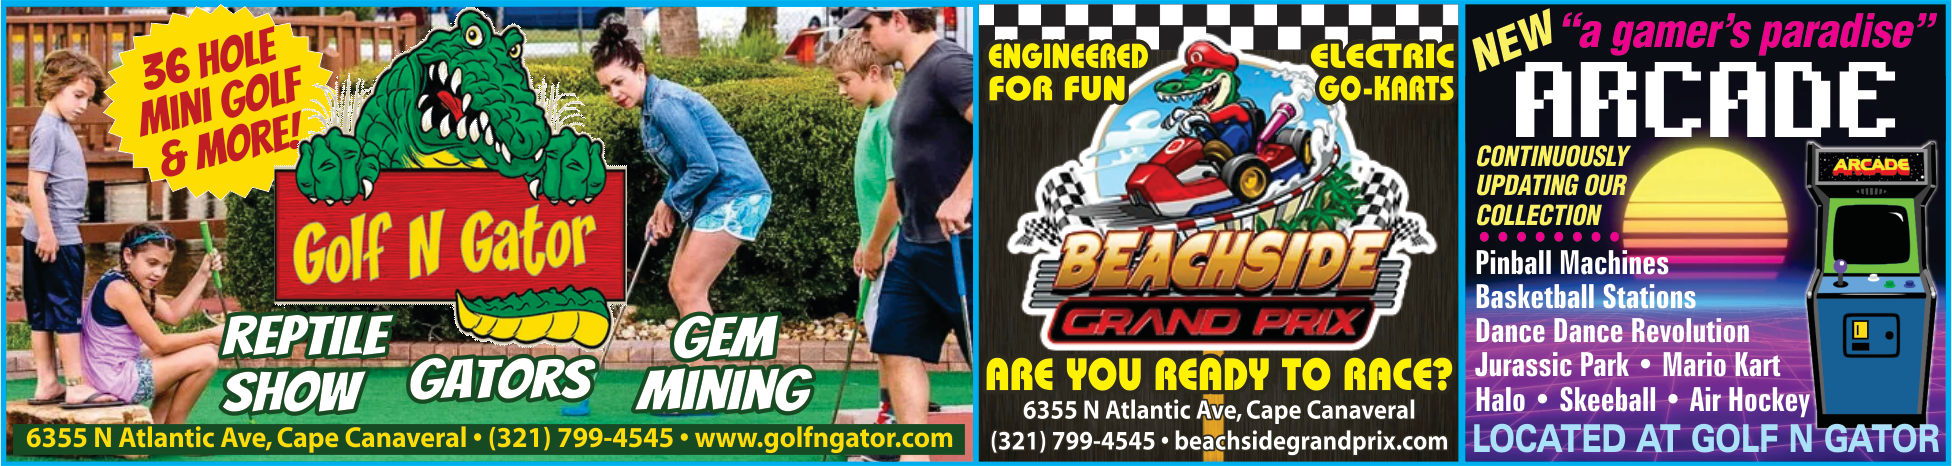 Golf N Gator Print Ad